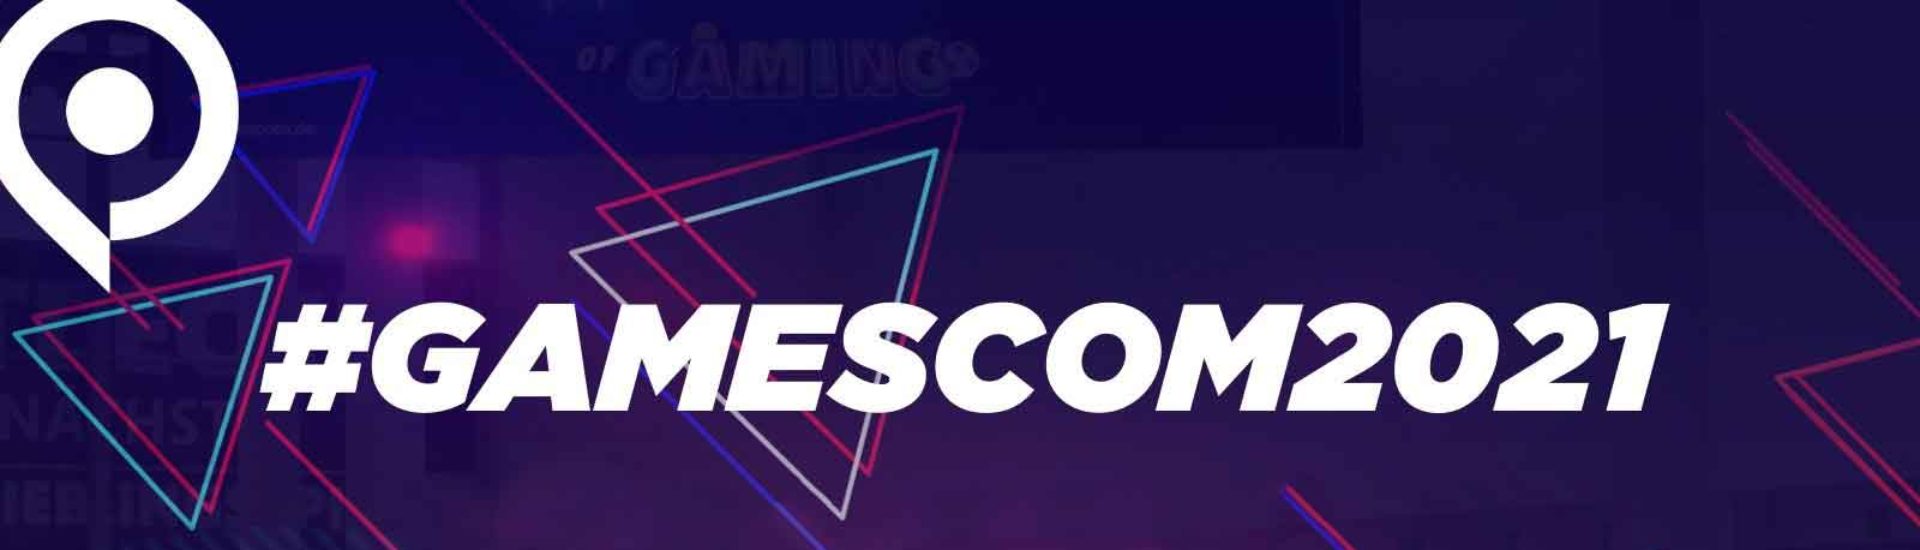 Gamescom 2021 wieder rein digital